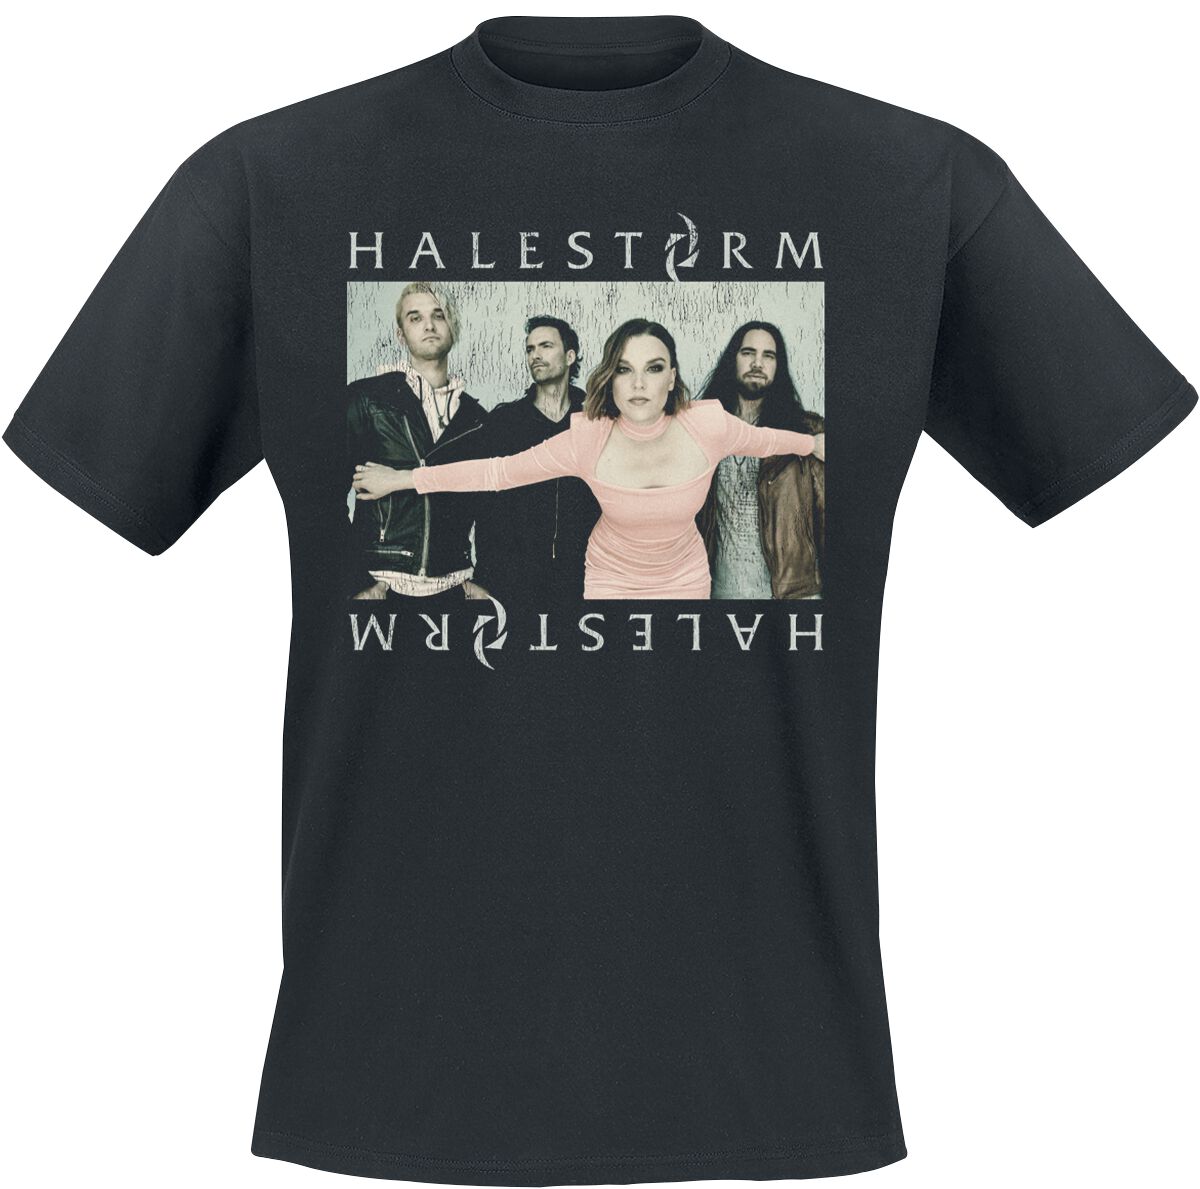 T-Shirt Manches courtes de Halestorm - Classic Photo - S à XXL - pour Homme - noir